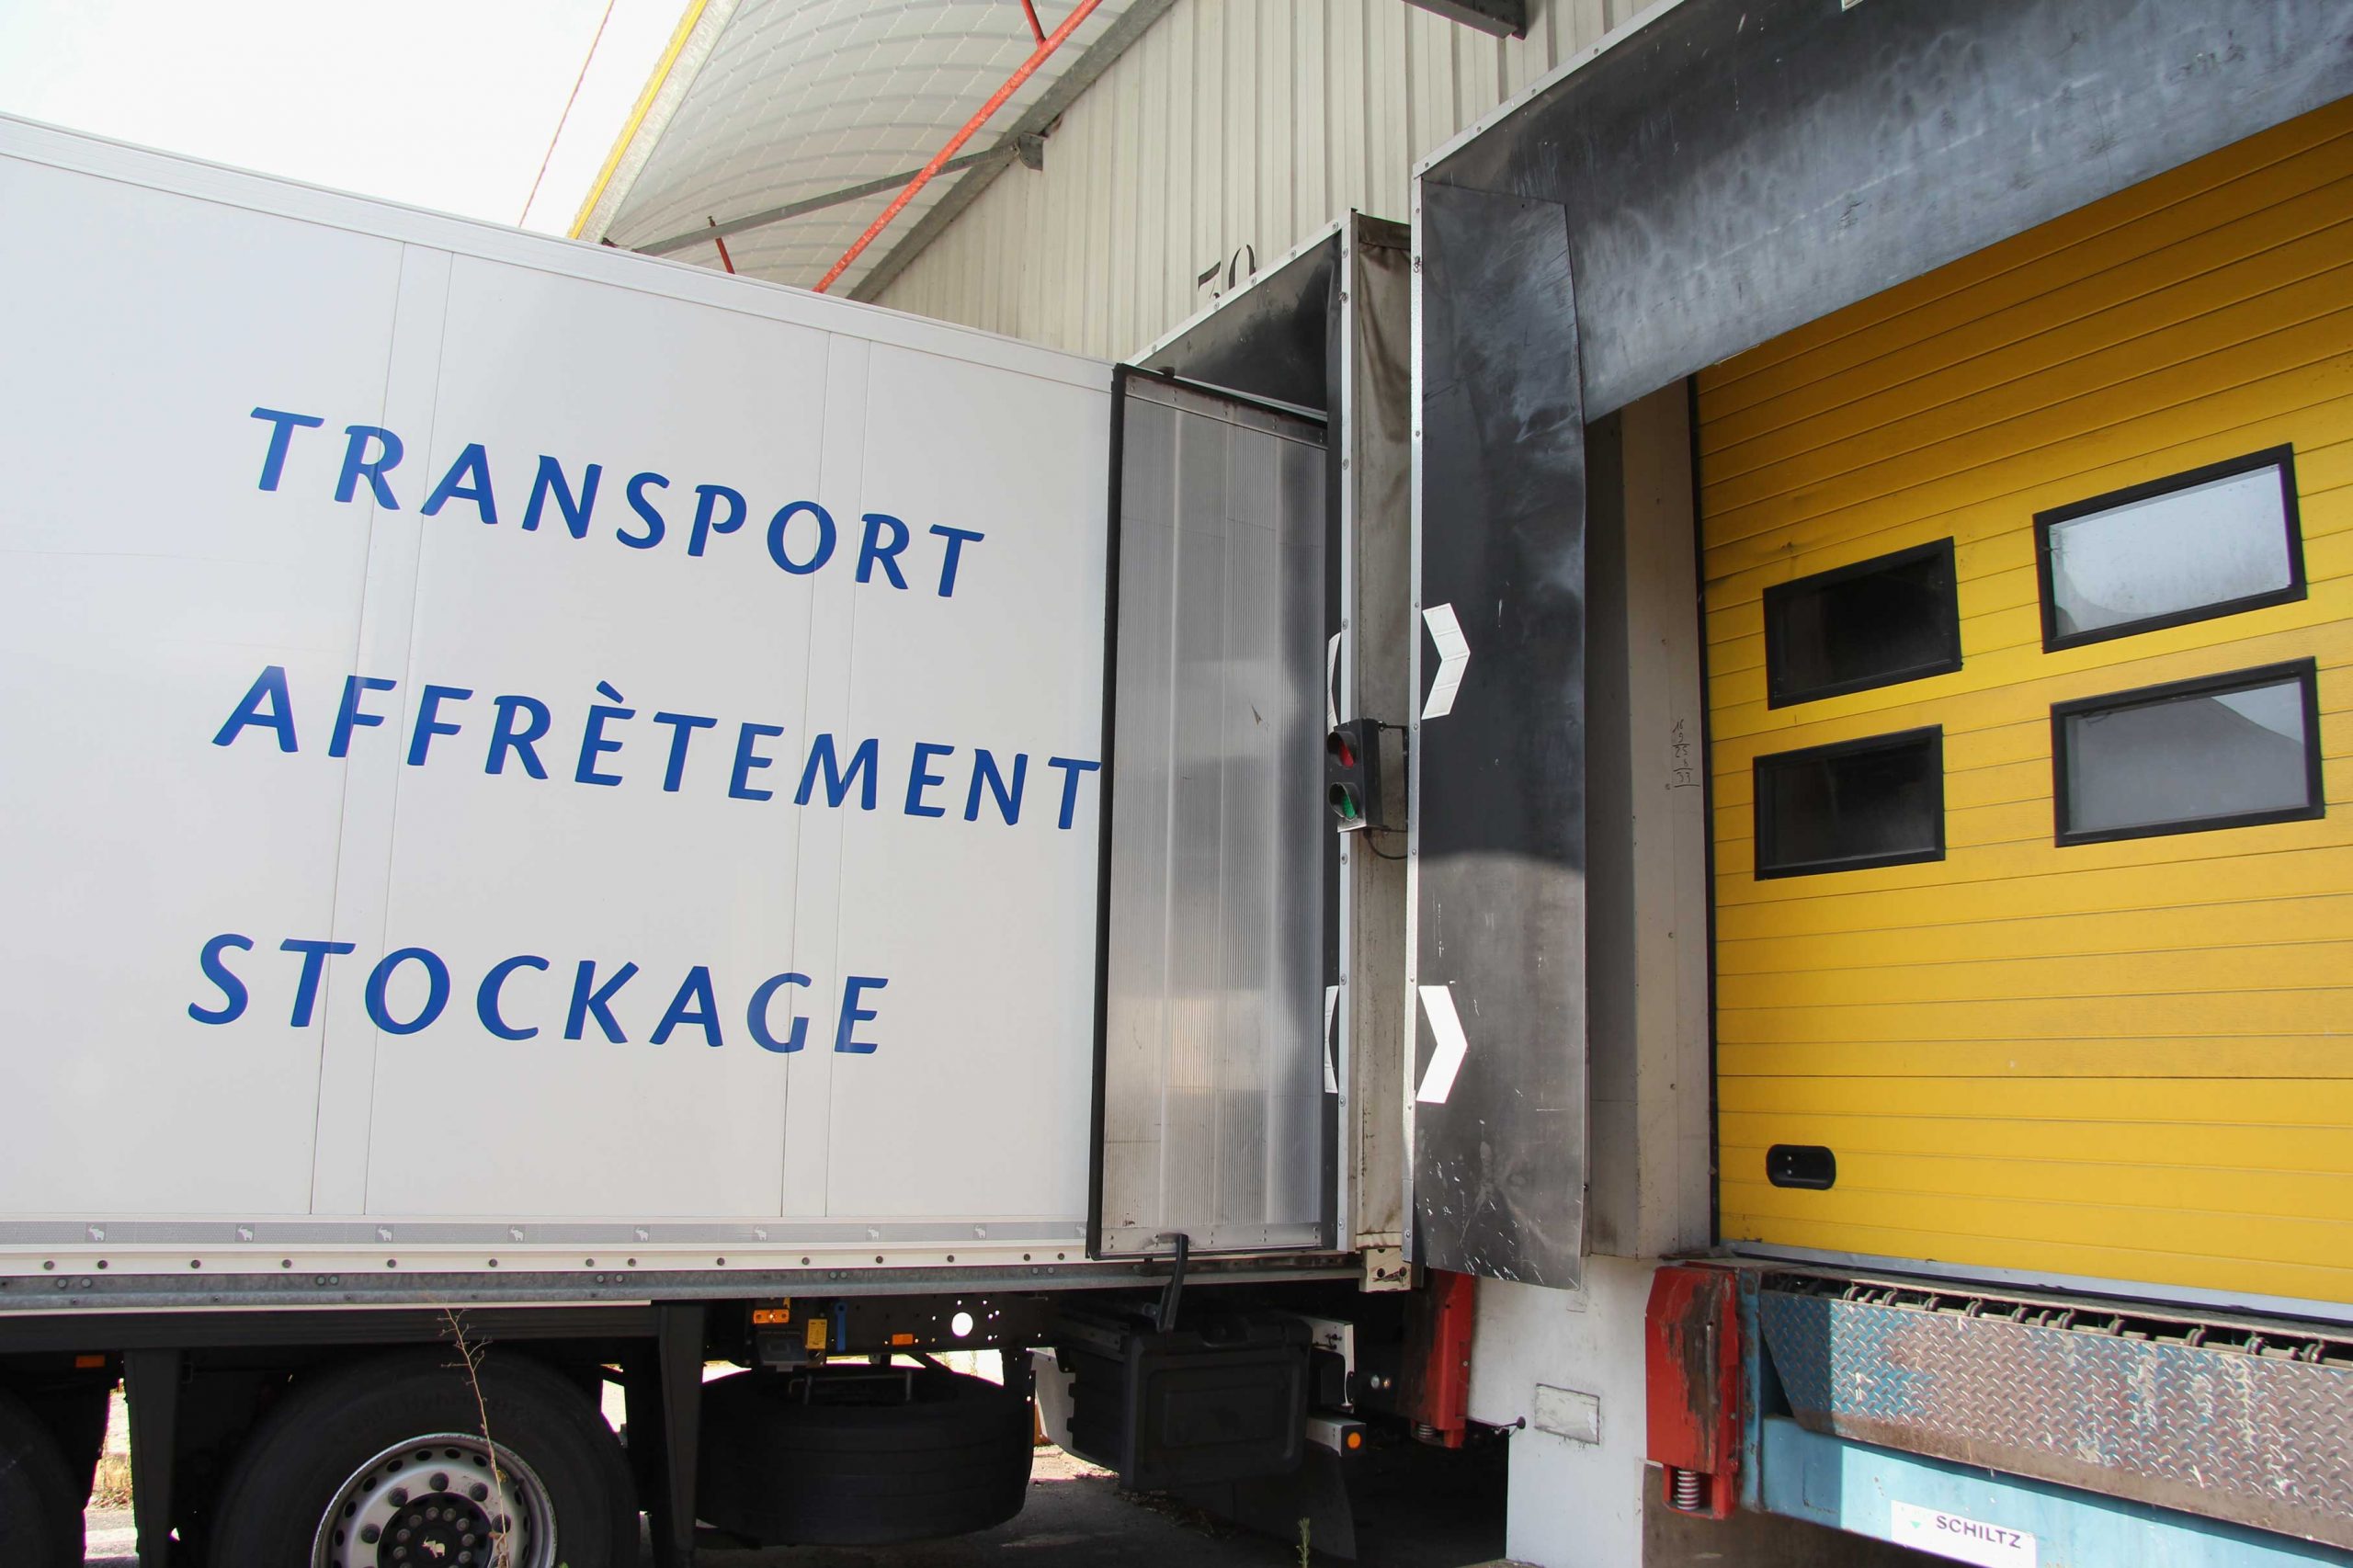 Transport Affrètement Stockage Conteneur Containers